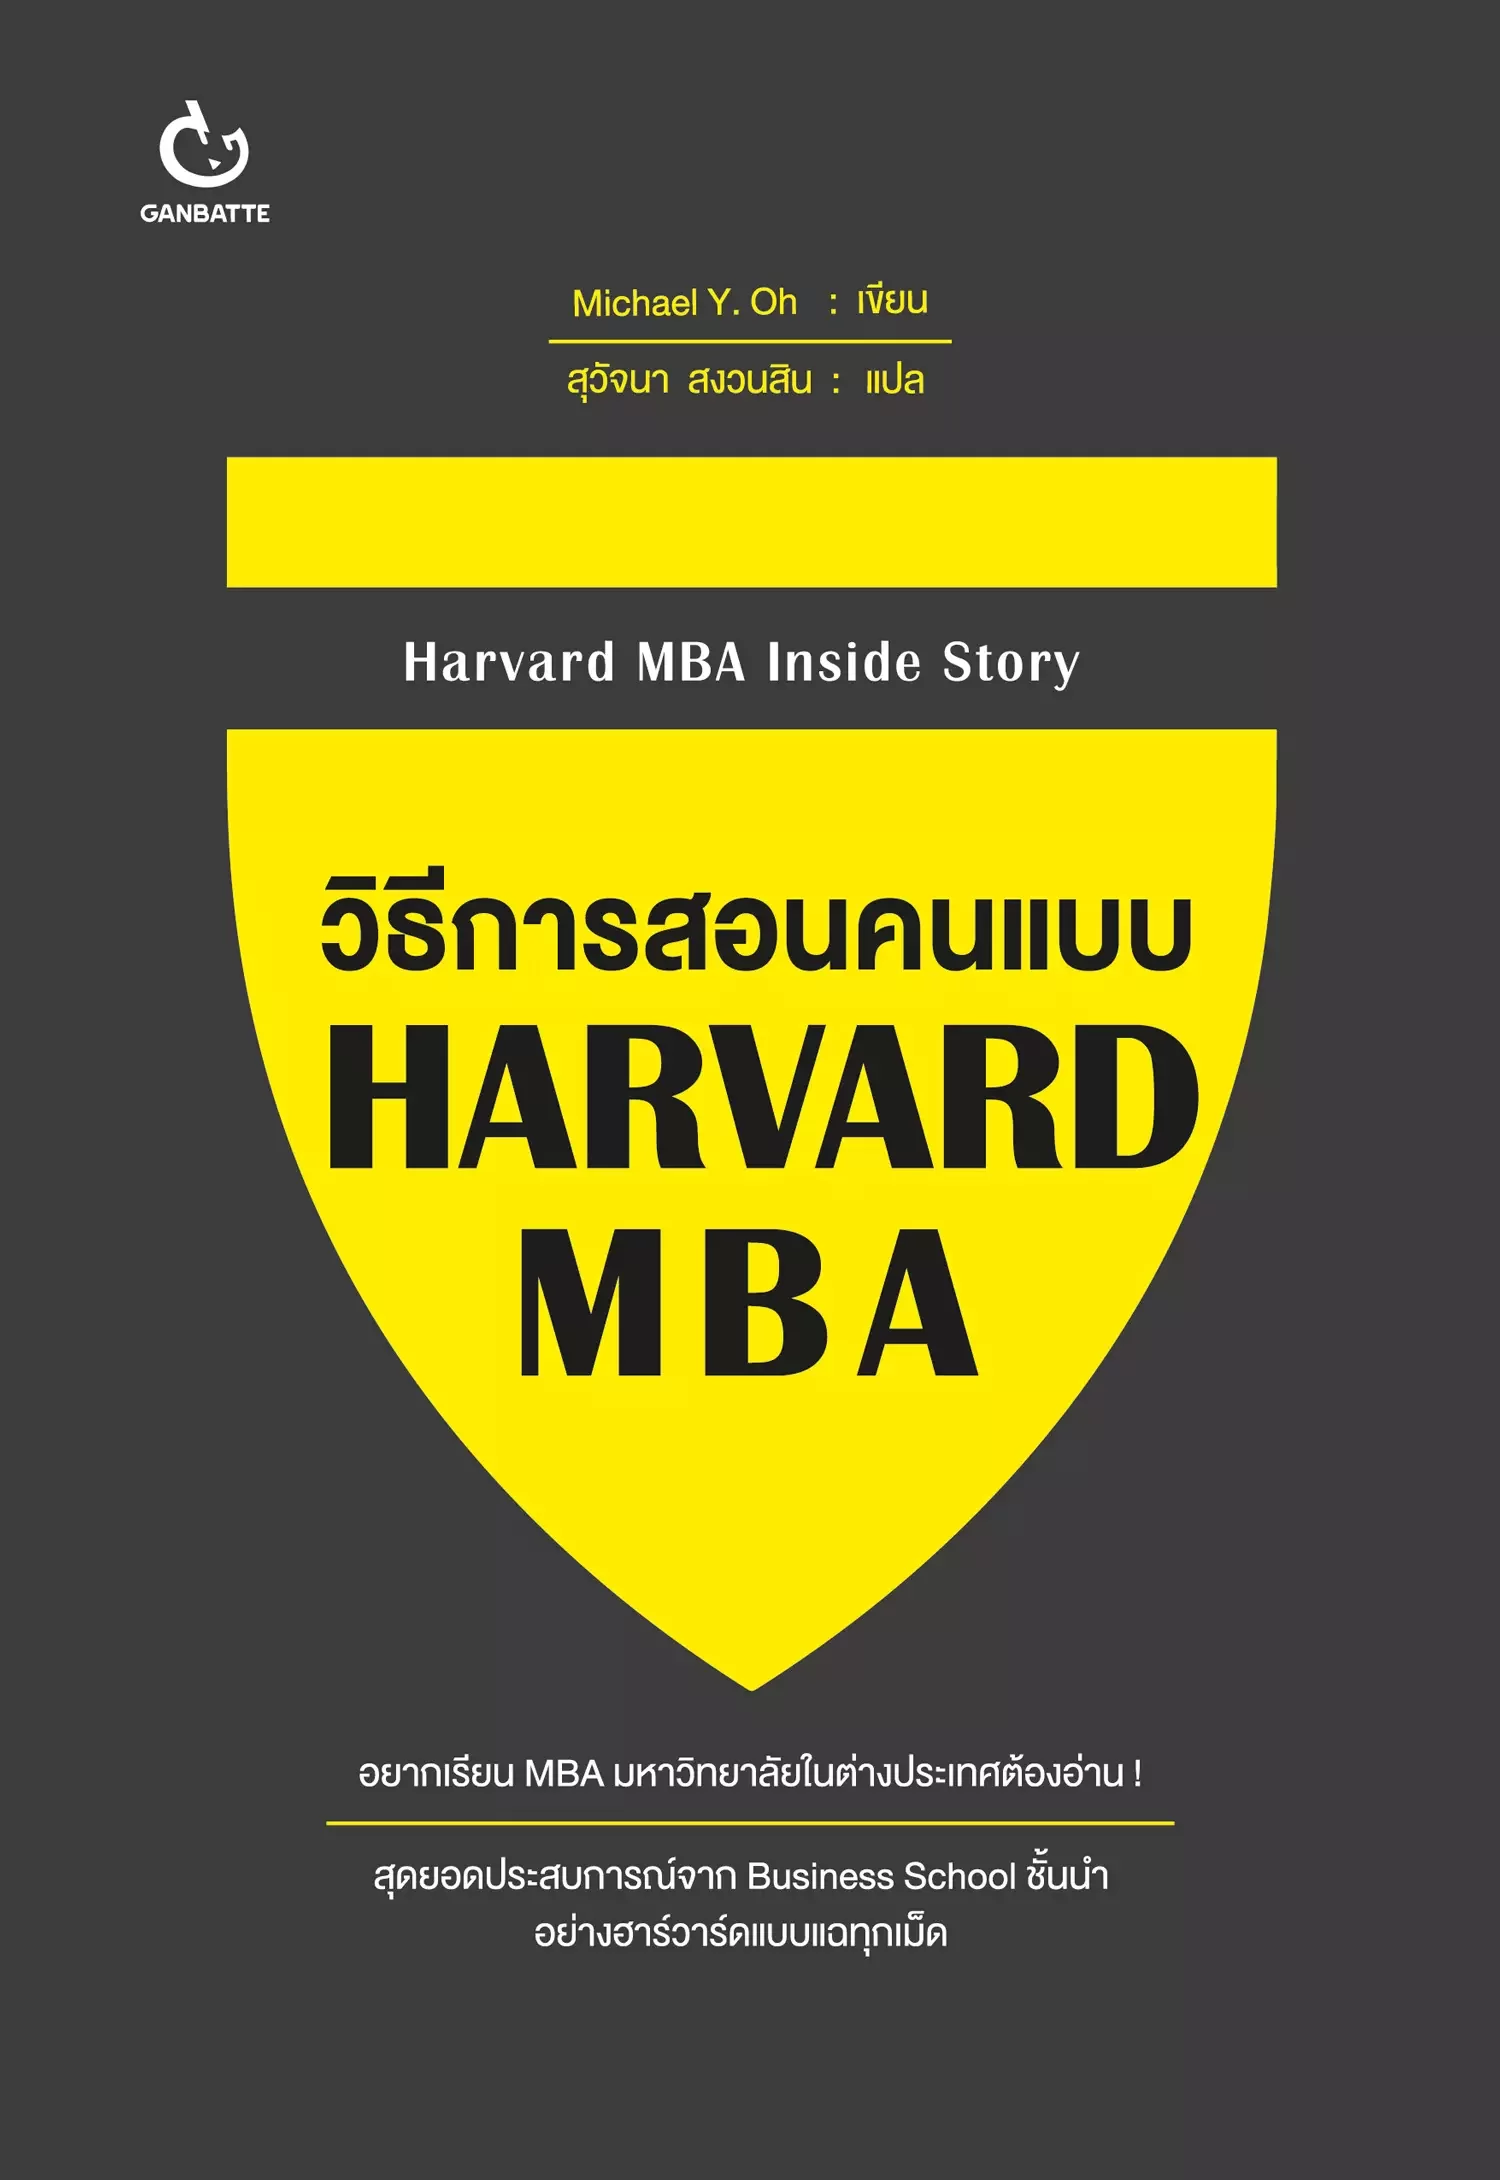 วิธีการสอนคนแบบ HARVARD MBA